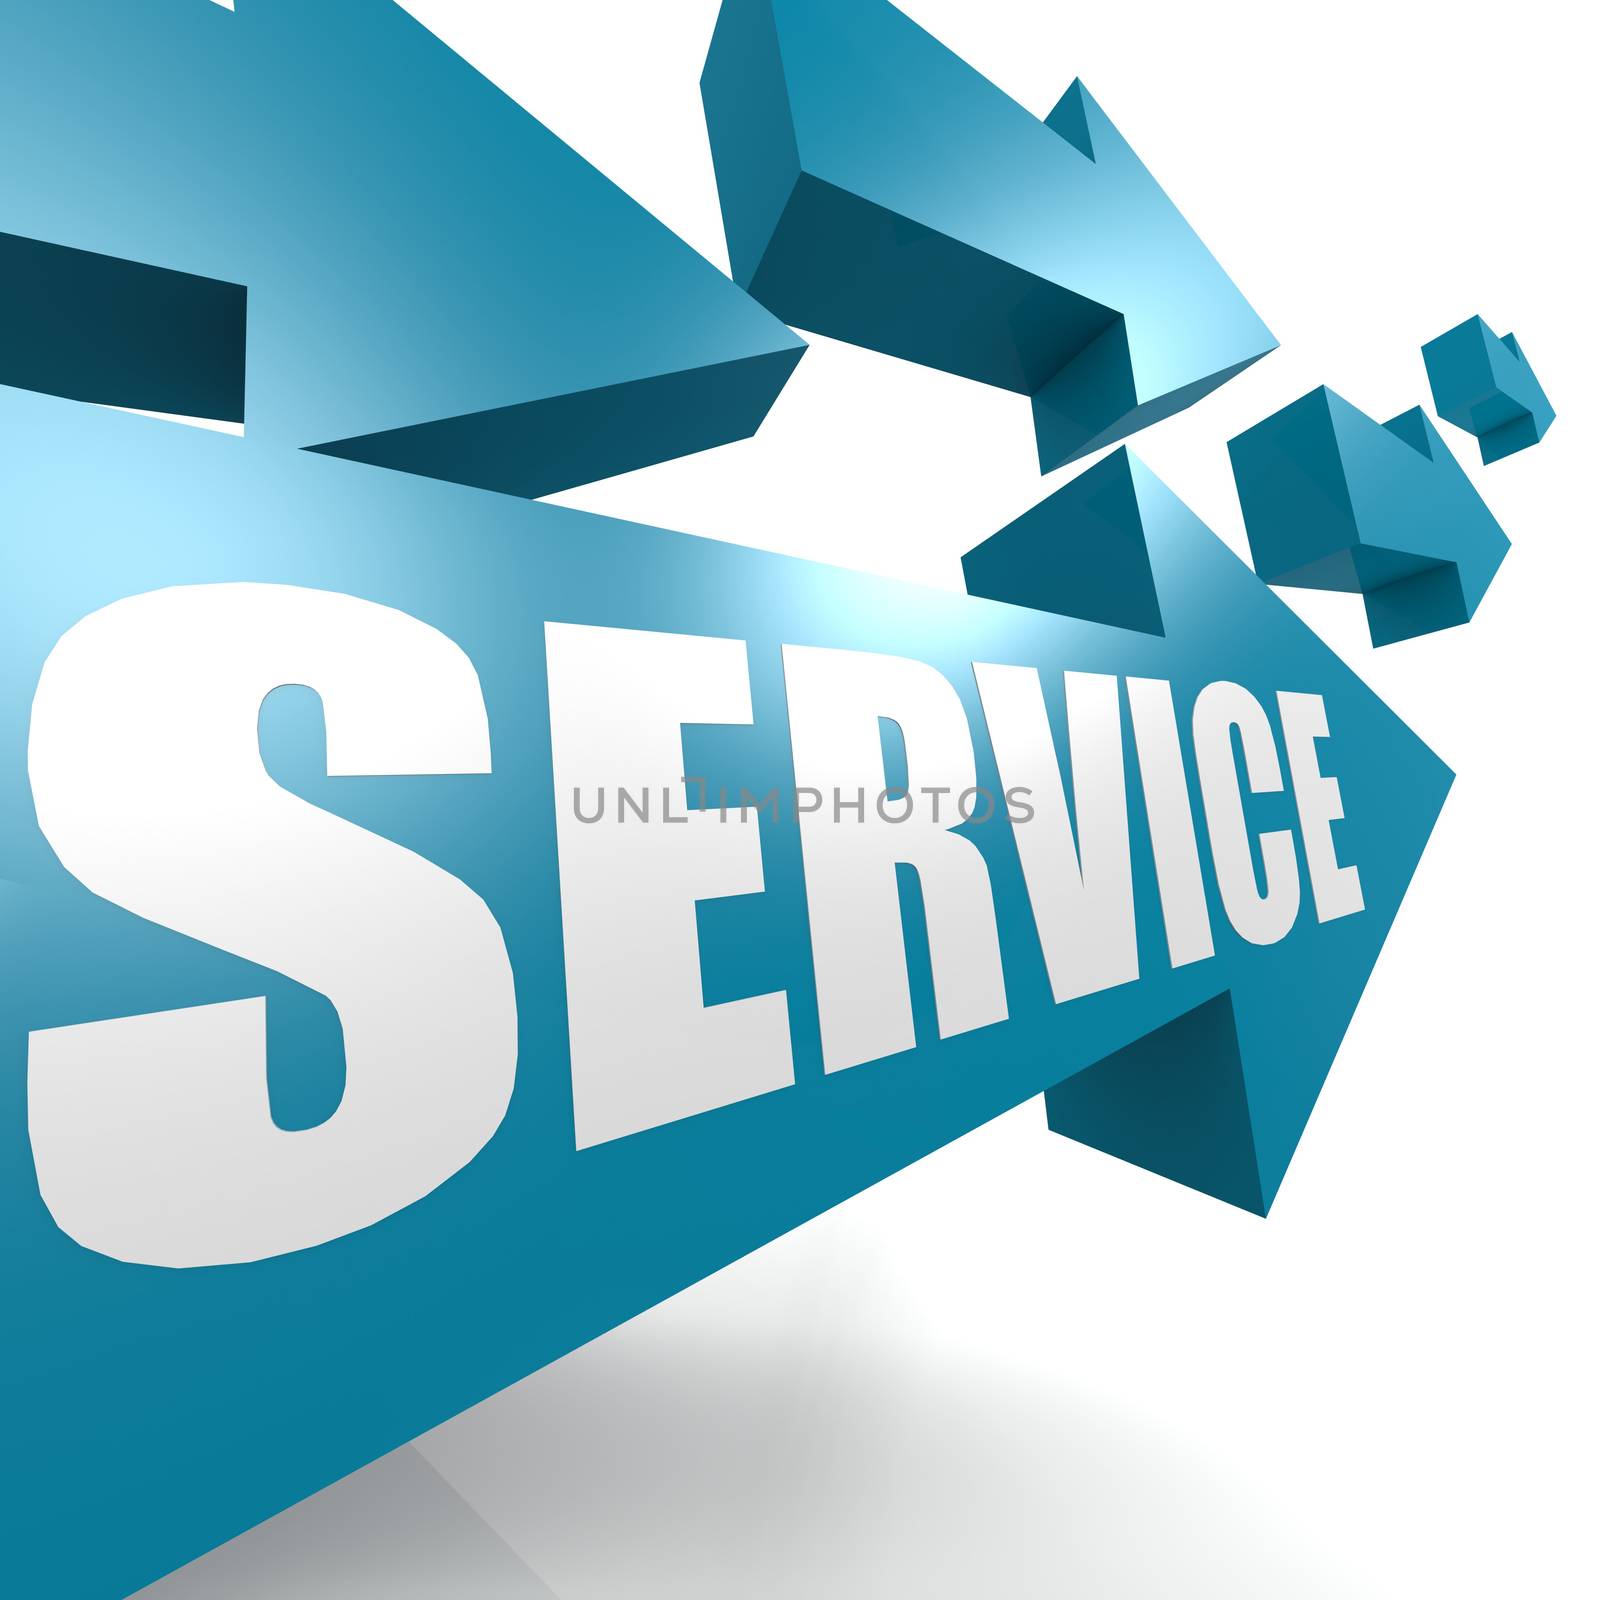 Service arrow in blue